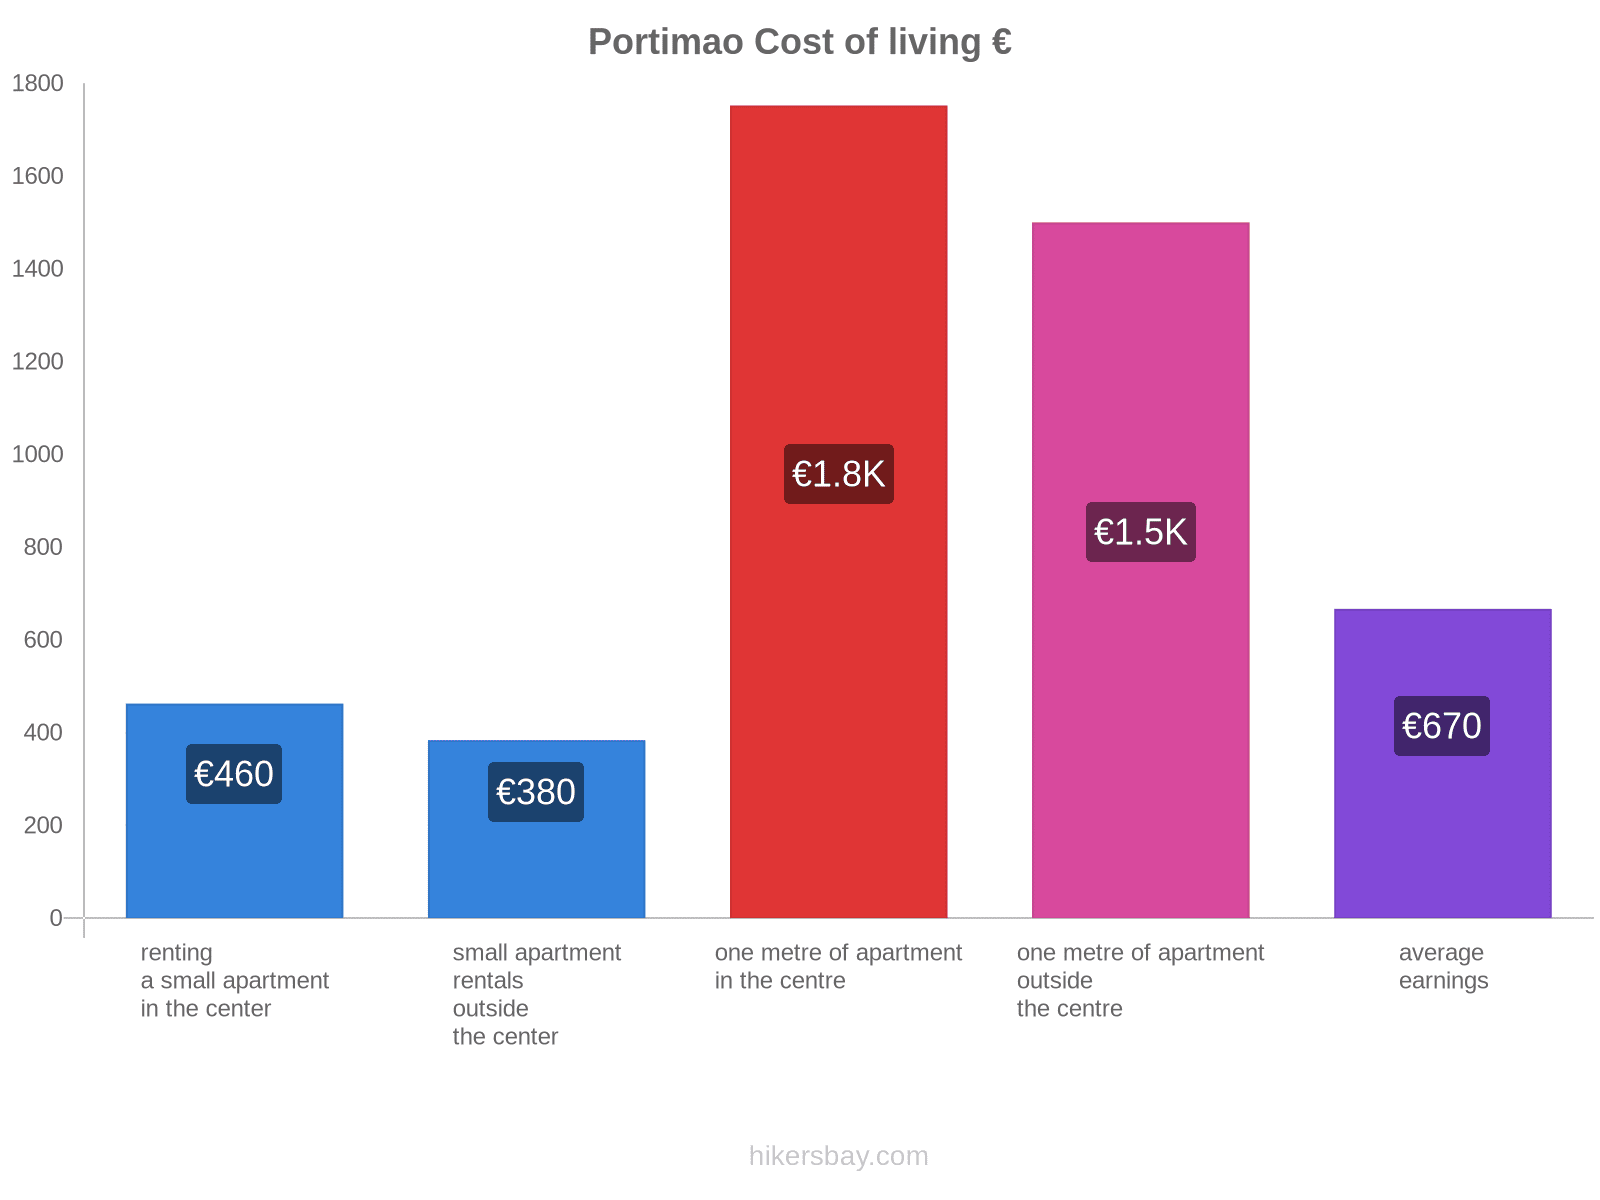 Portimao cost of living hikersbay.com